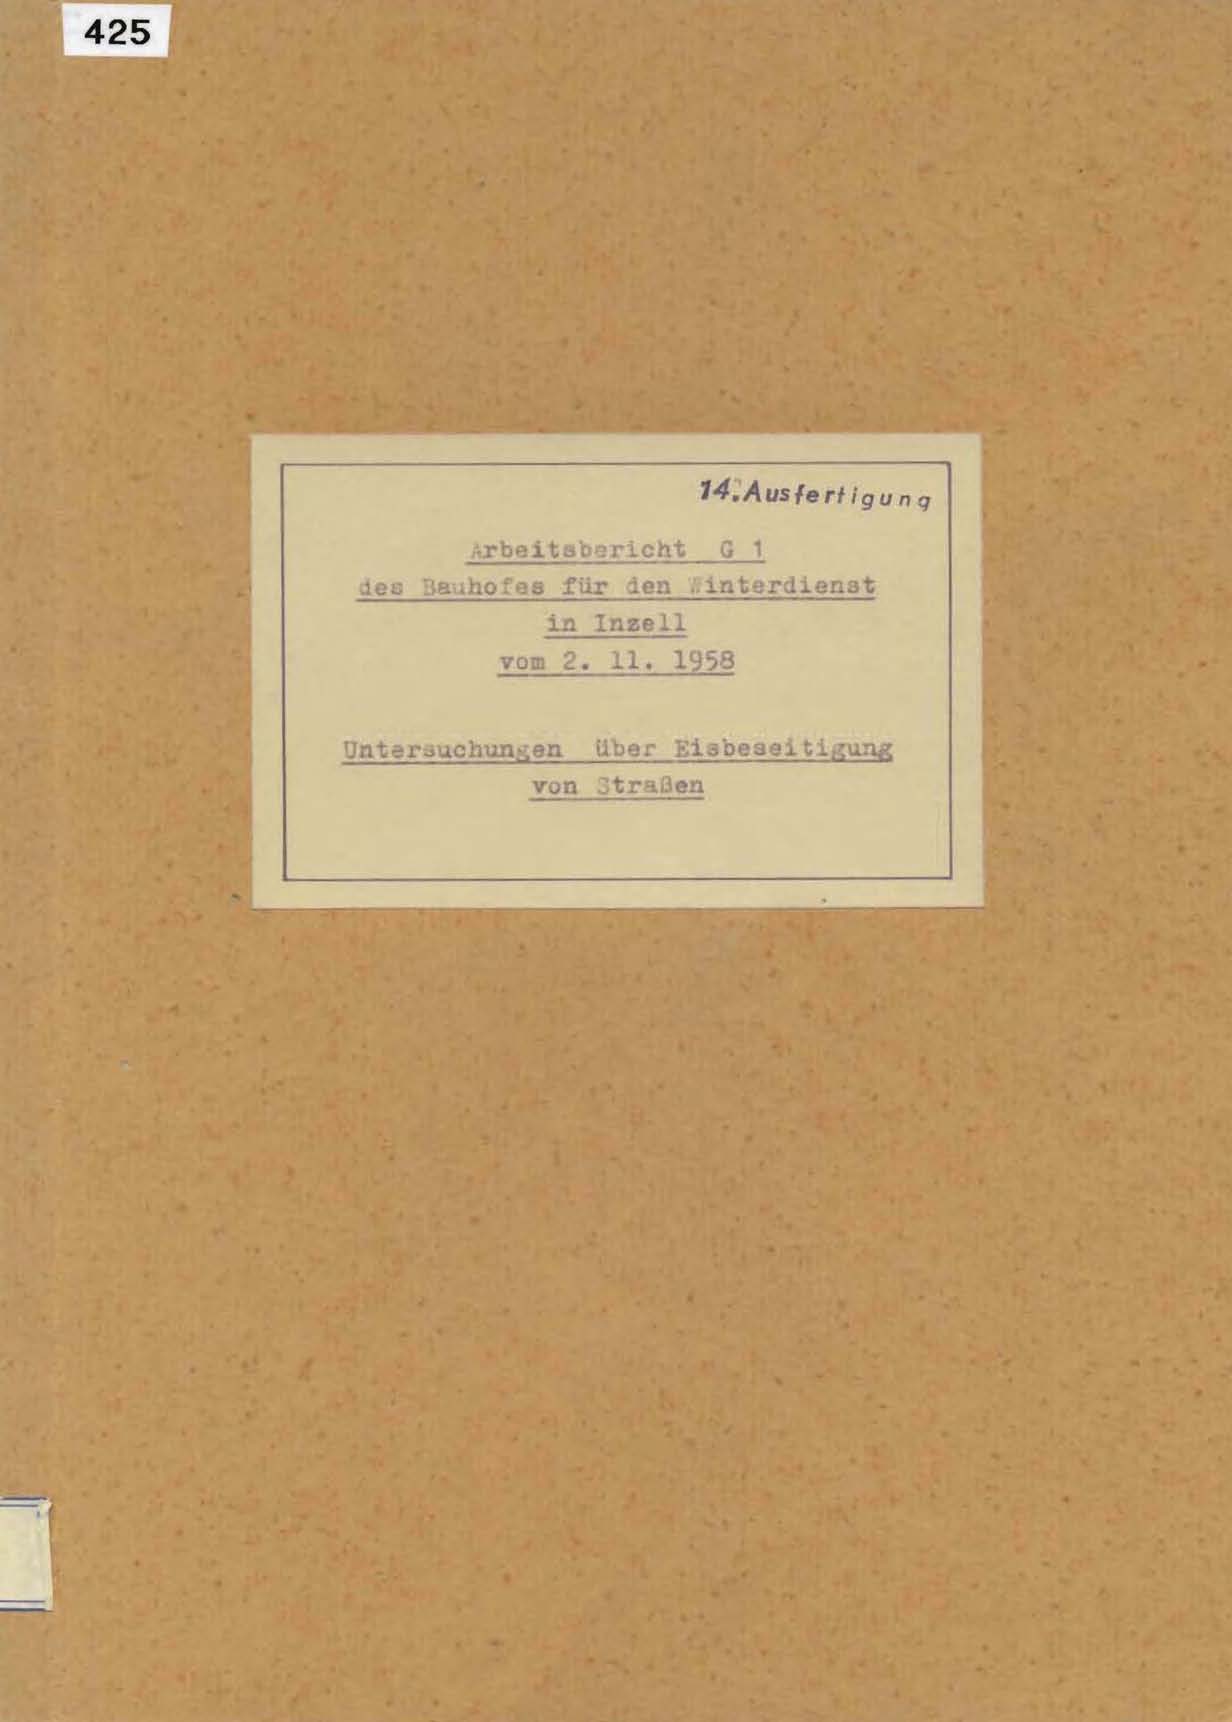 Arbeitsbericht G1 des Bauhofes für den Winterdienst in Inzell vom 2.11.1958